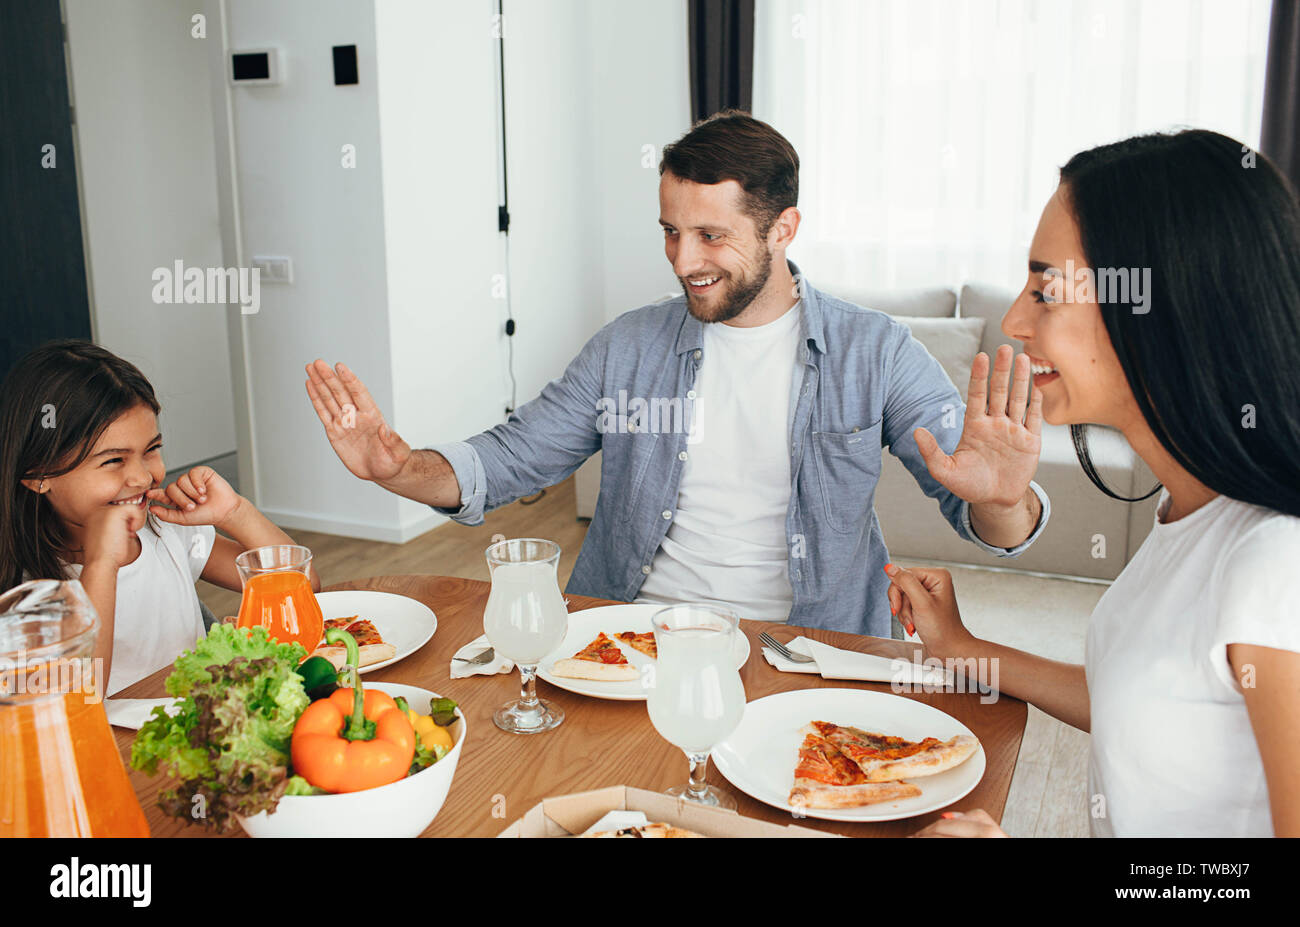 Familie, Mutter, Vater und Tochter beim Essen. Essen essen hausgemachte Pizza zu Hause Stockfoto